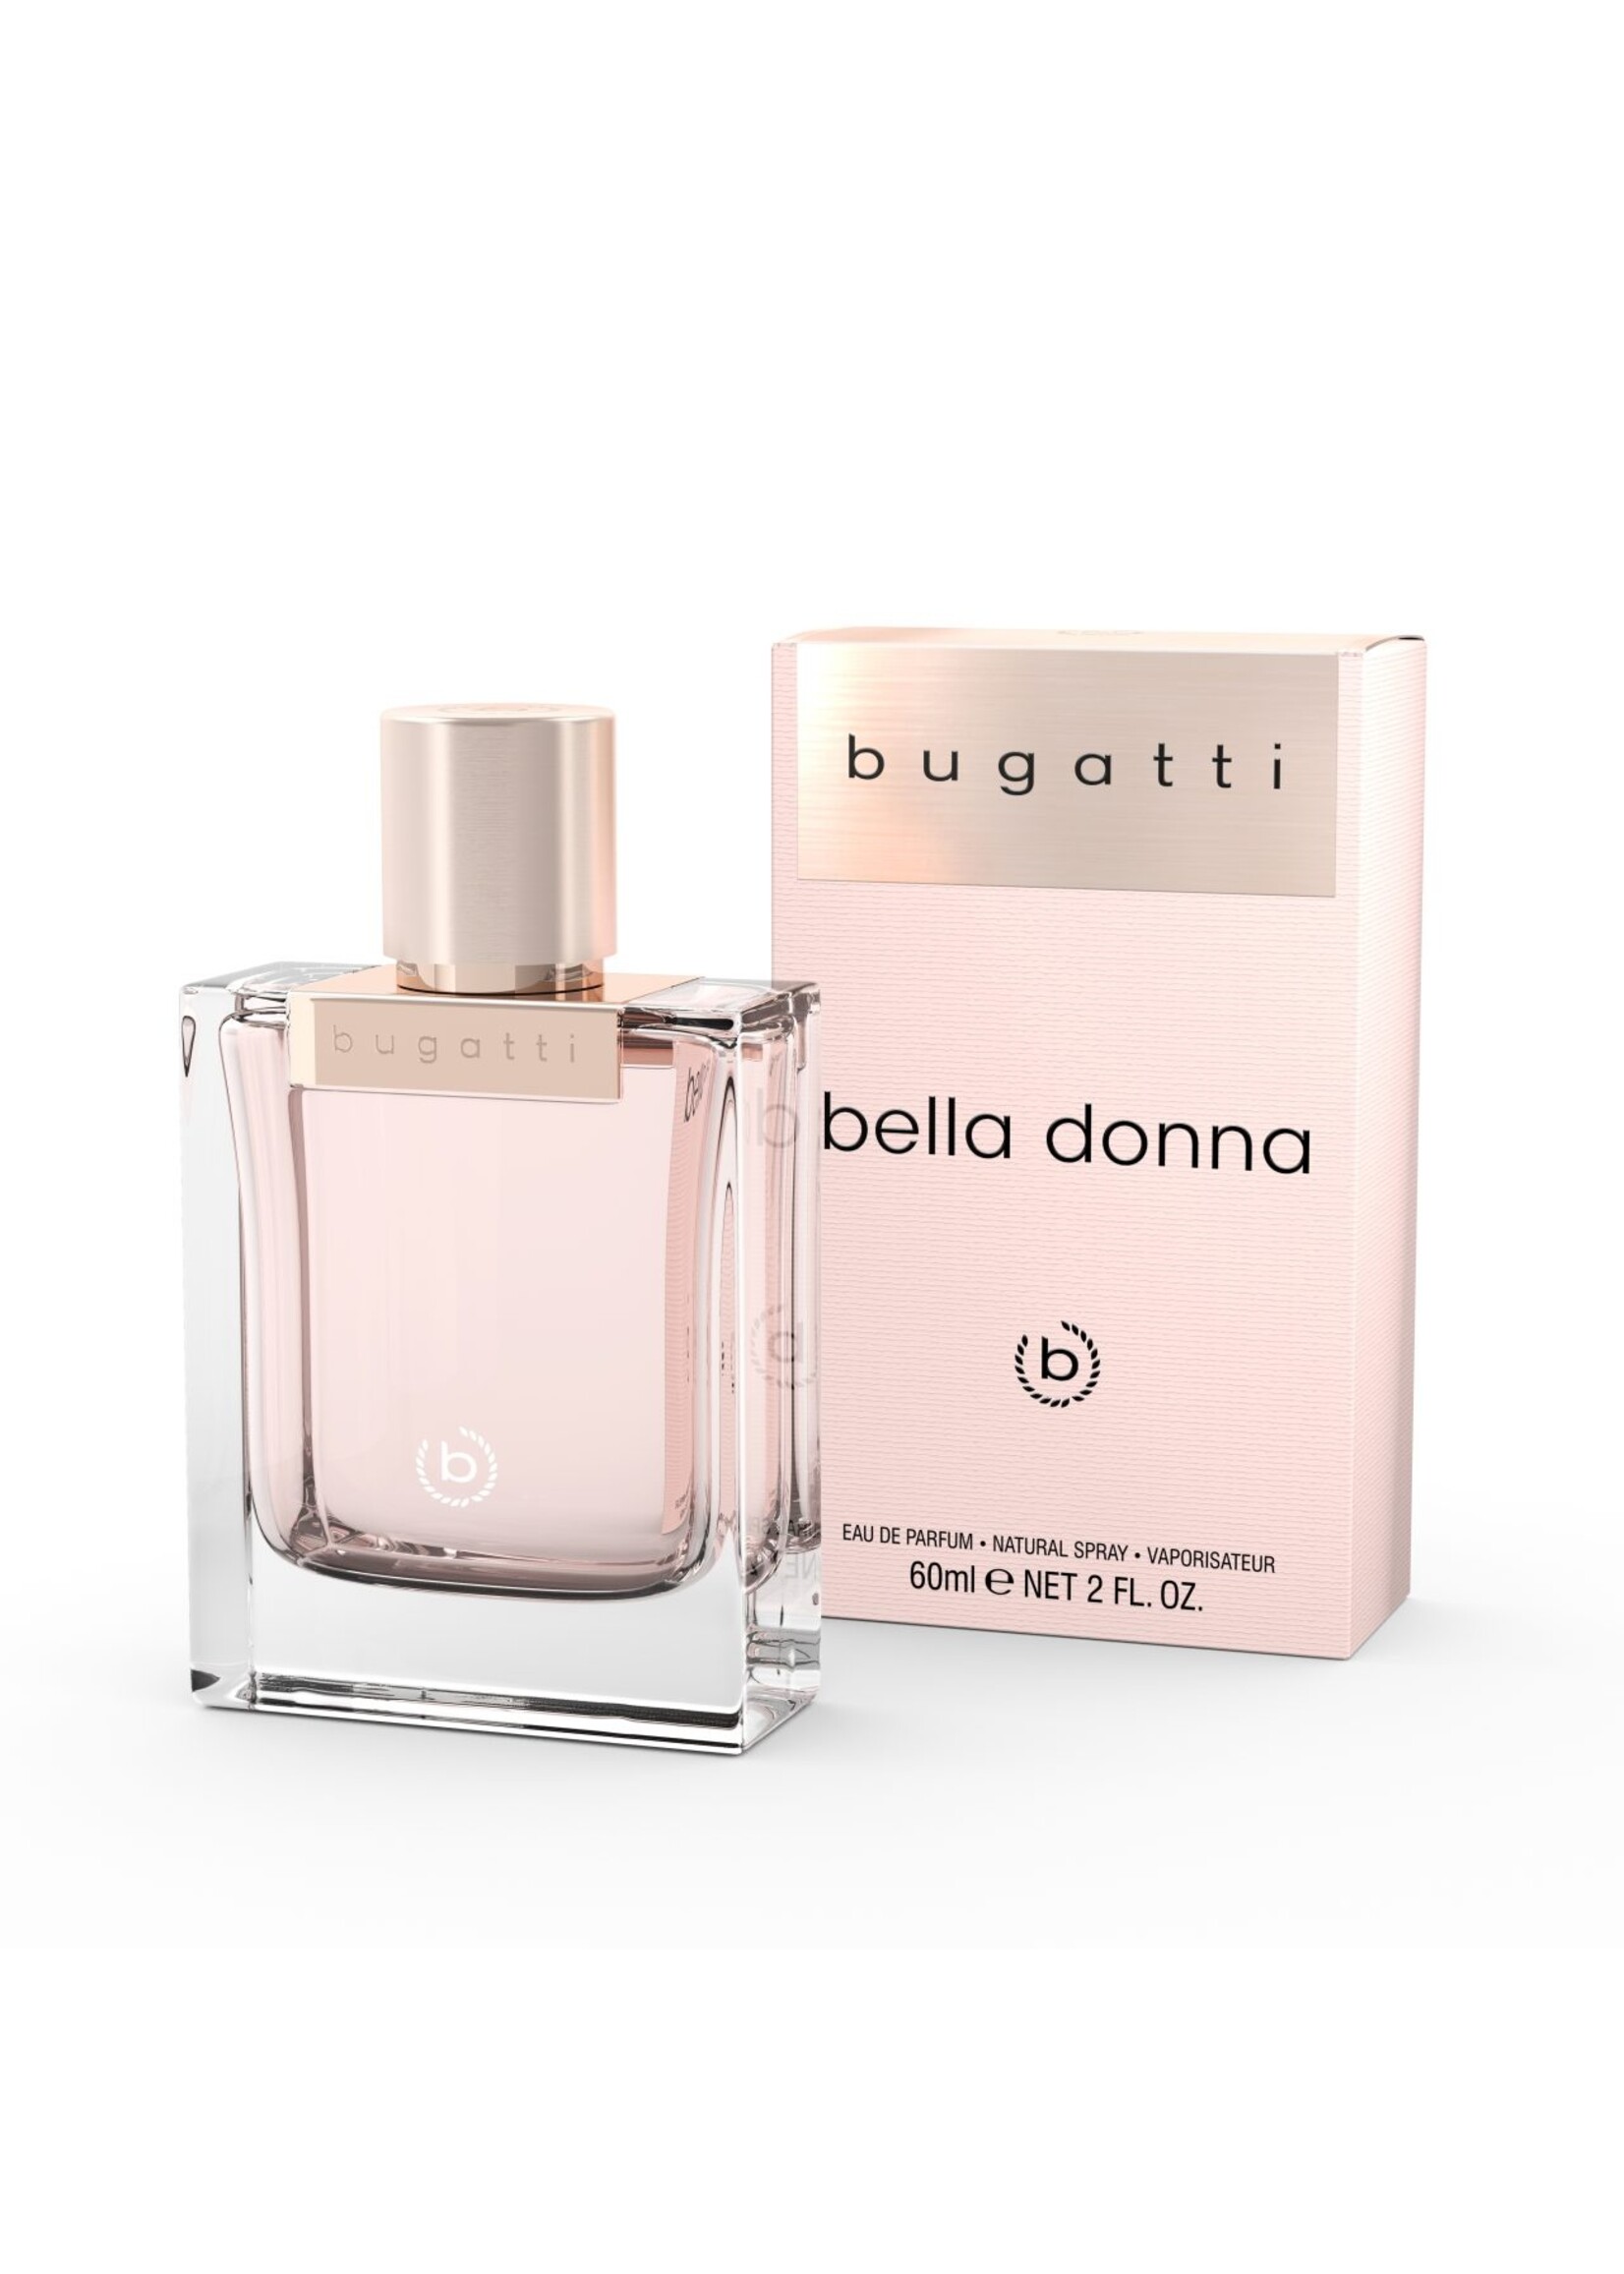 Bella Donna - De MARIE PARFUMERIE - Eau Marie-Rose - Parfum Parfumerie BUTATTI PARFUMS by ROSE